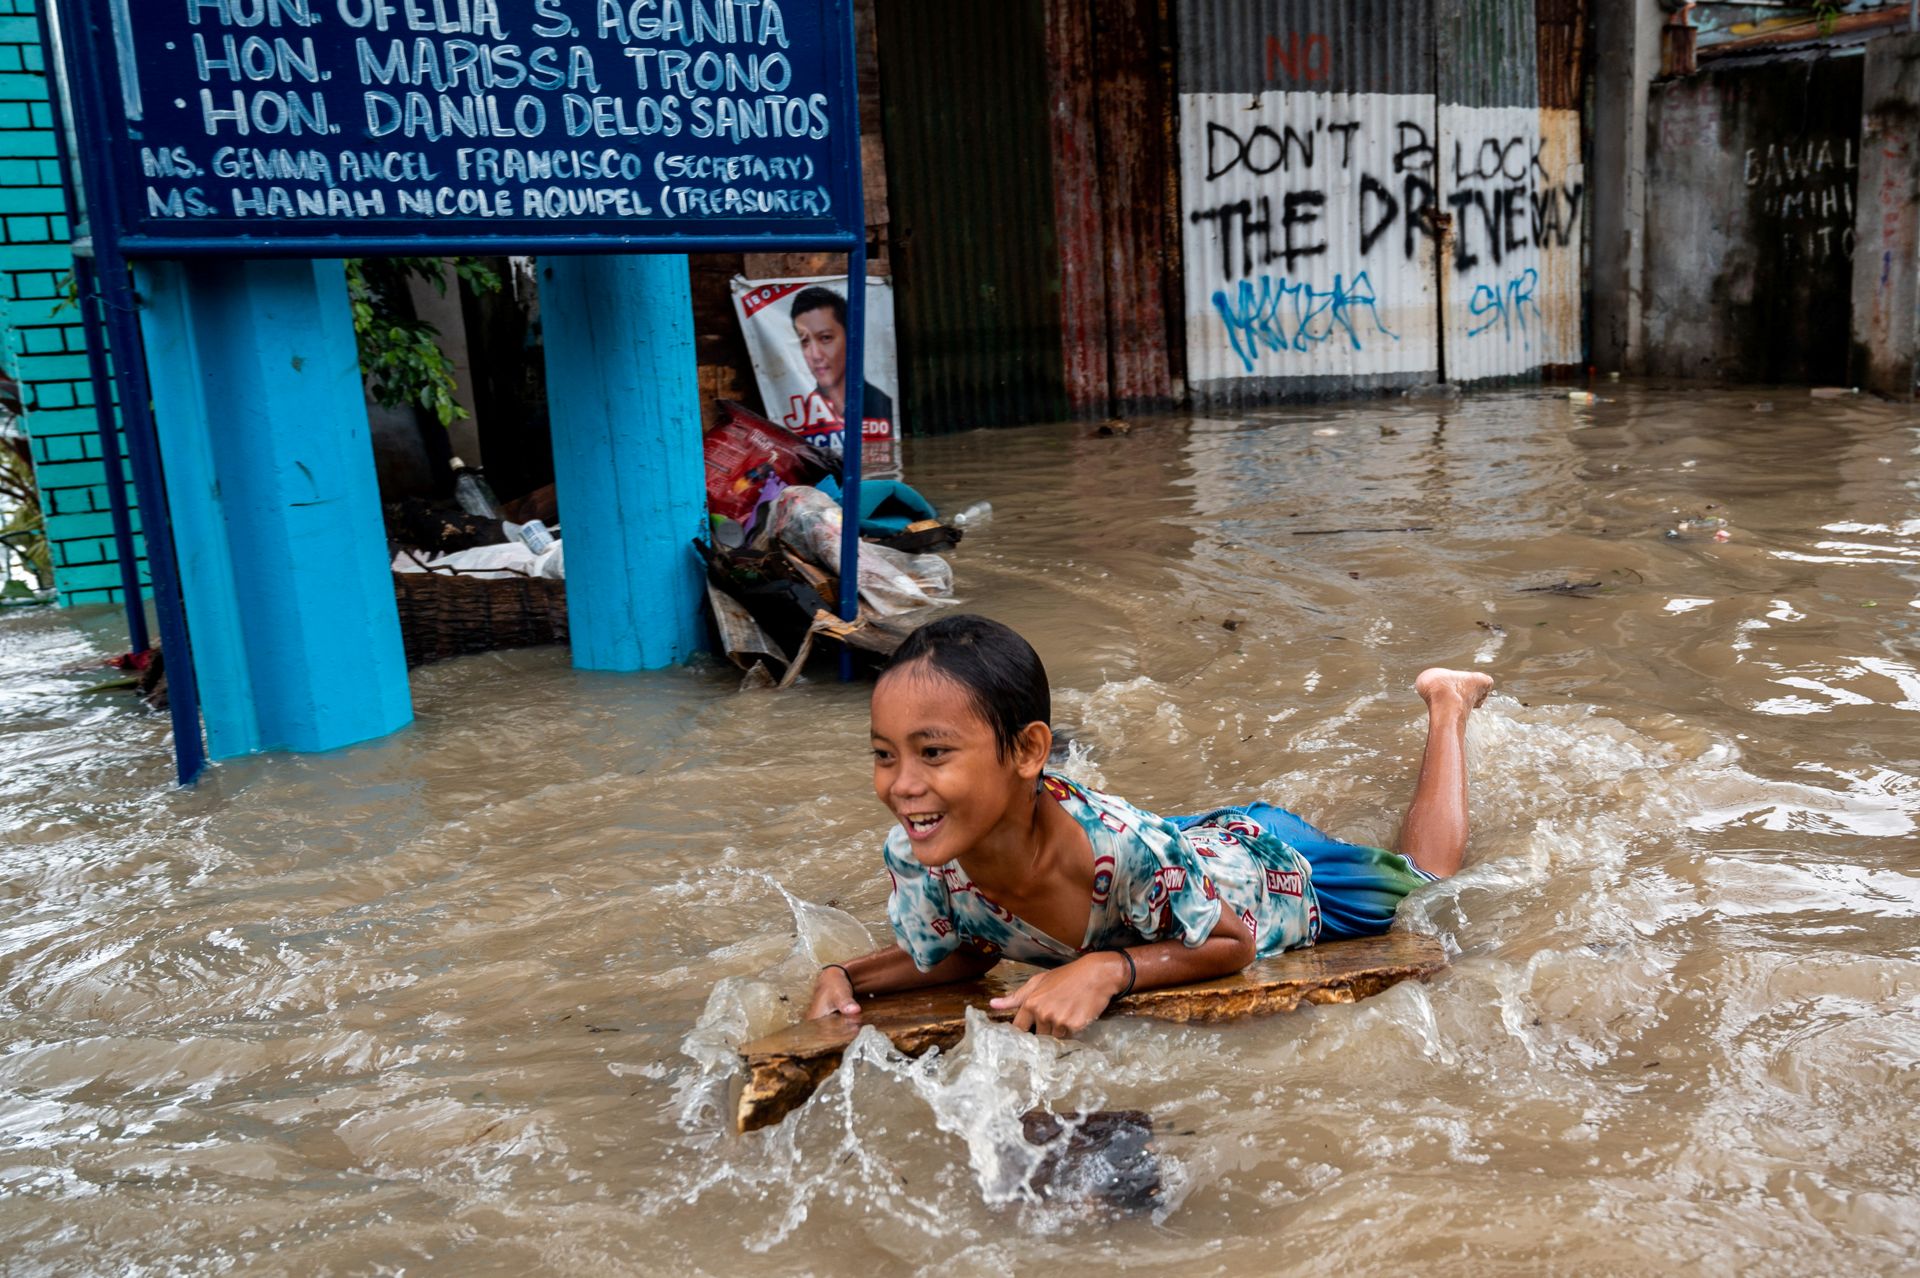 En solbrun jente med svart hår ler mens hun fyker gjennom brunt flomvann utenfor noen oversvømte bygninger.